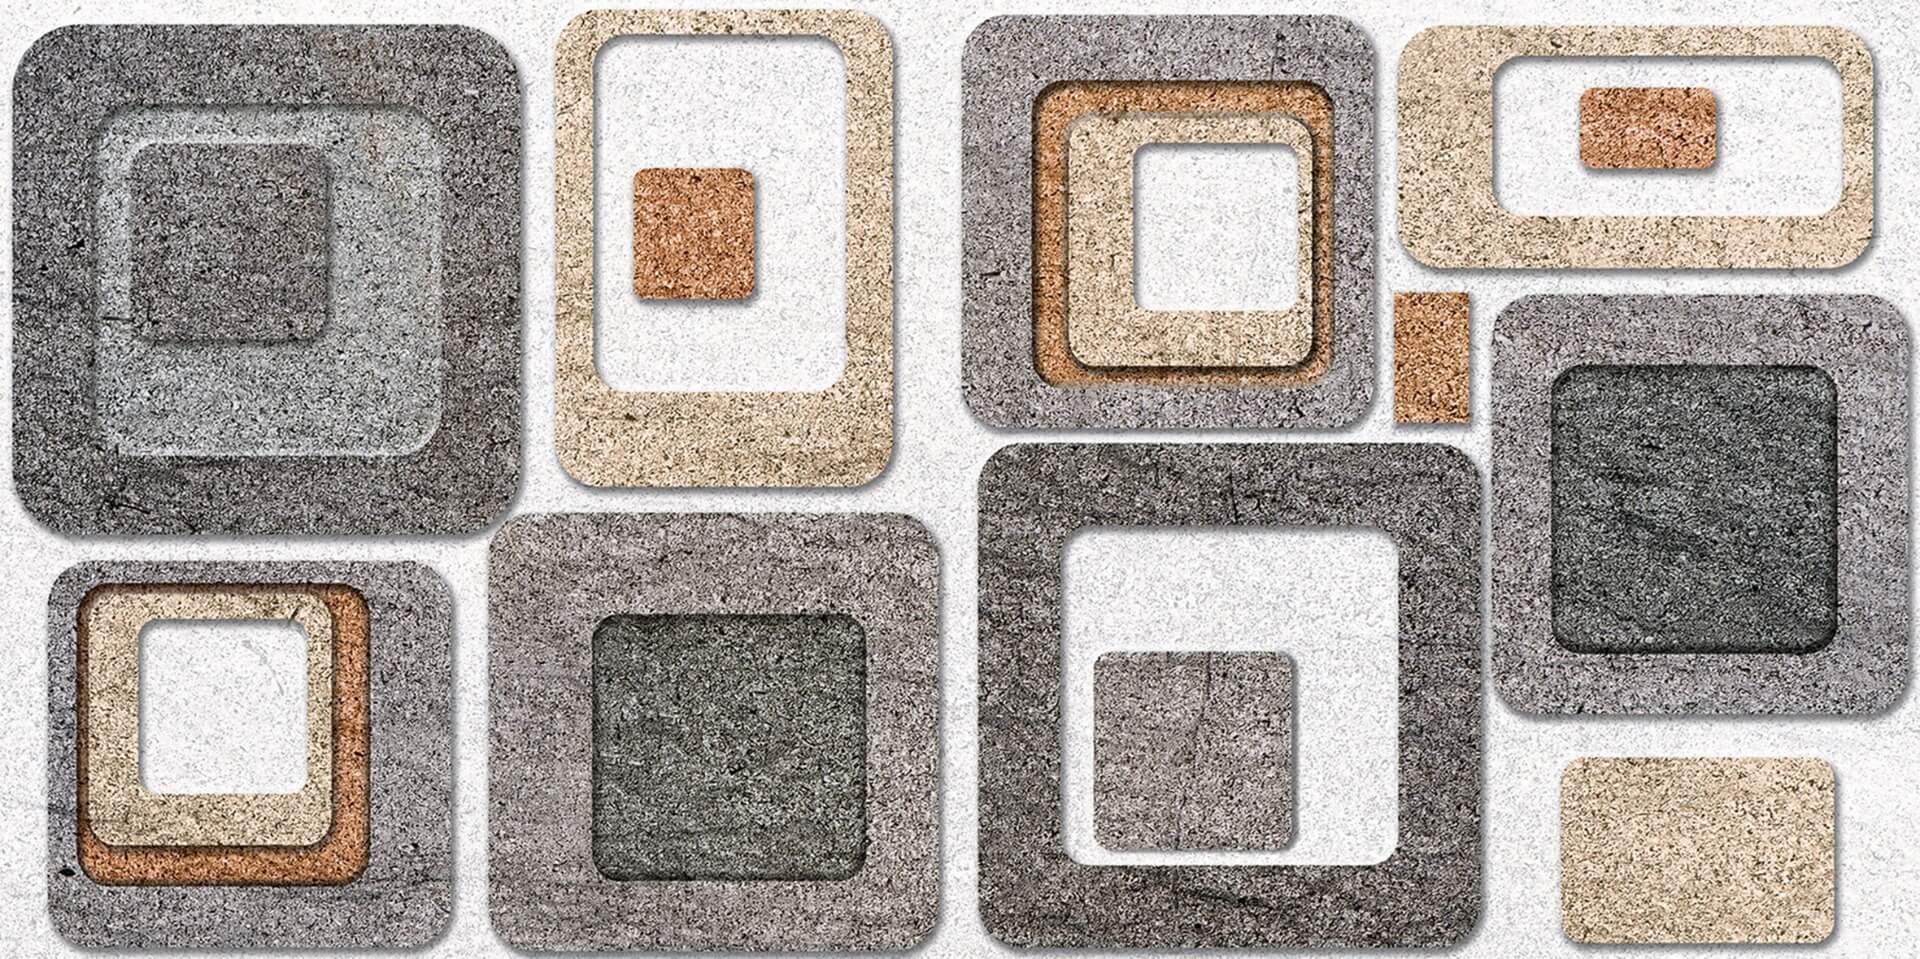 Cement Tiles for Bathroom Tiles, Kitchen Tiles, Accent Tiles